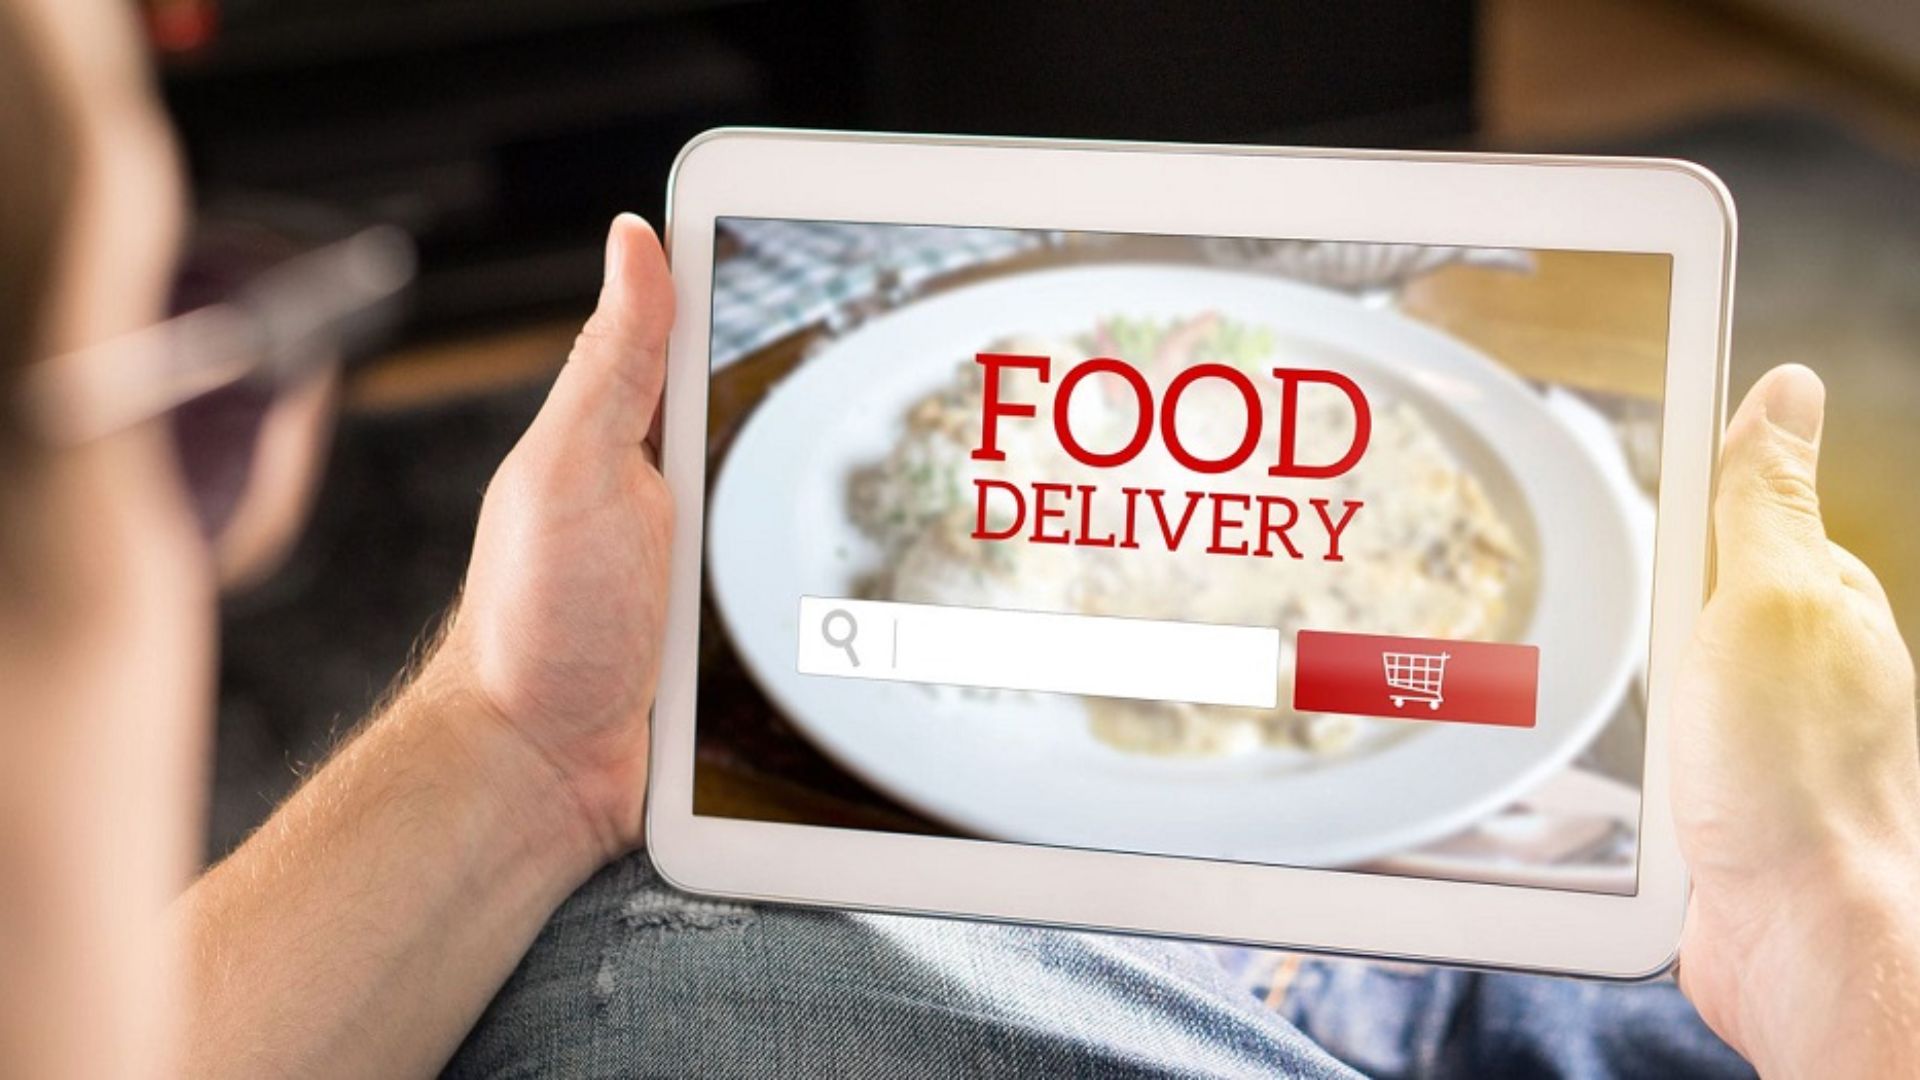 Kinh doanh Food App - Tiềm năng bán hàng hiệu quả